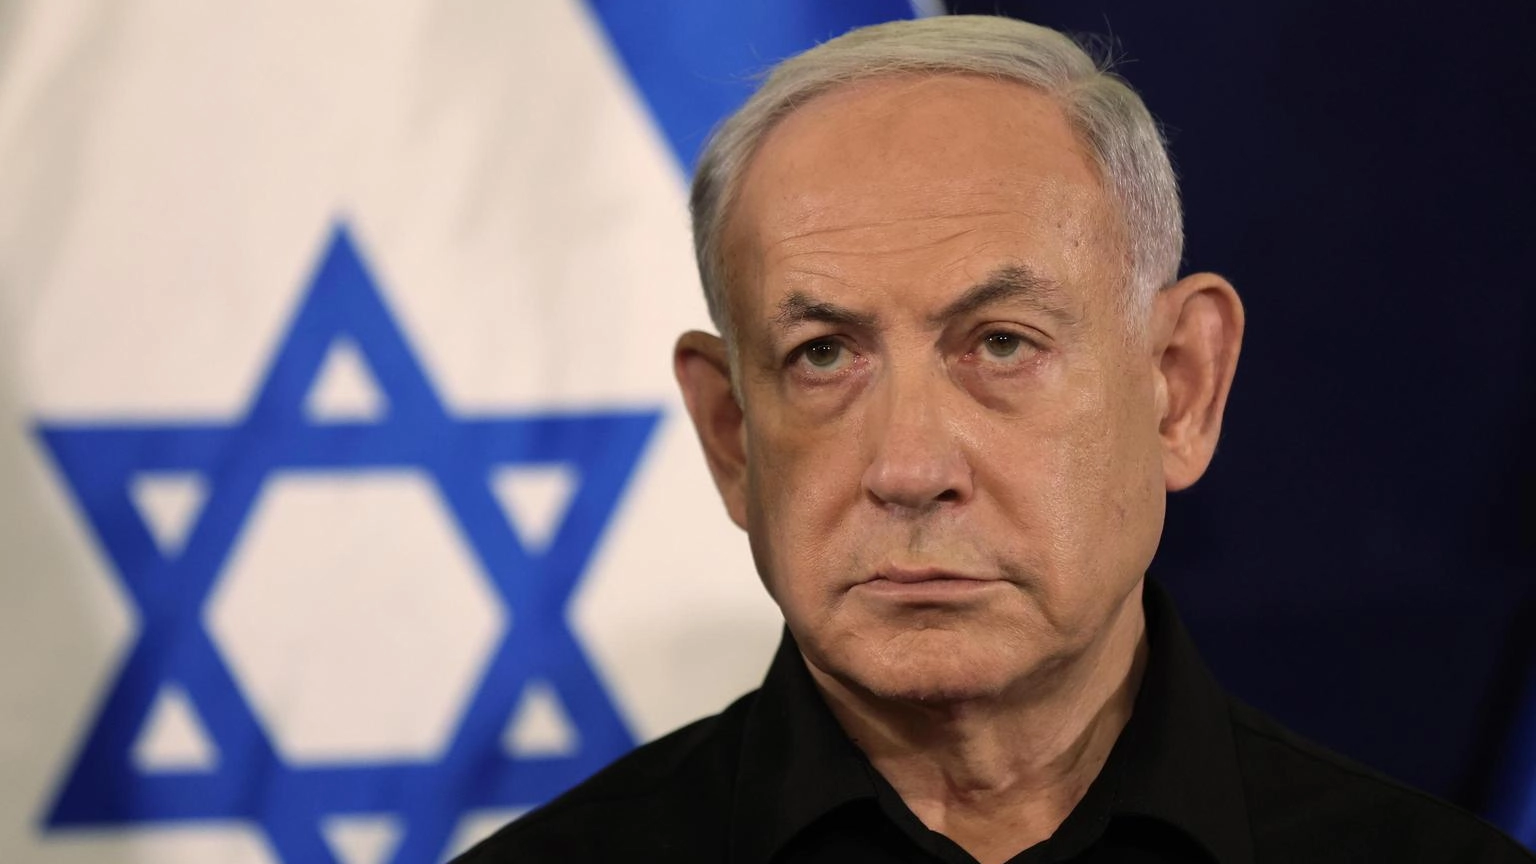 Media, Netanyahu valuta richiesta Usa di pausa umanitaria